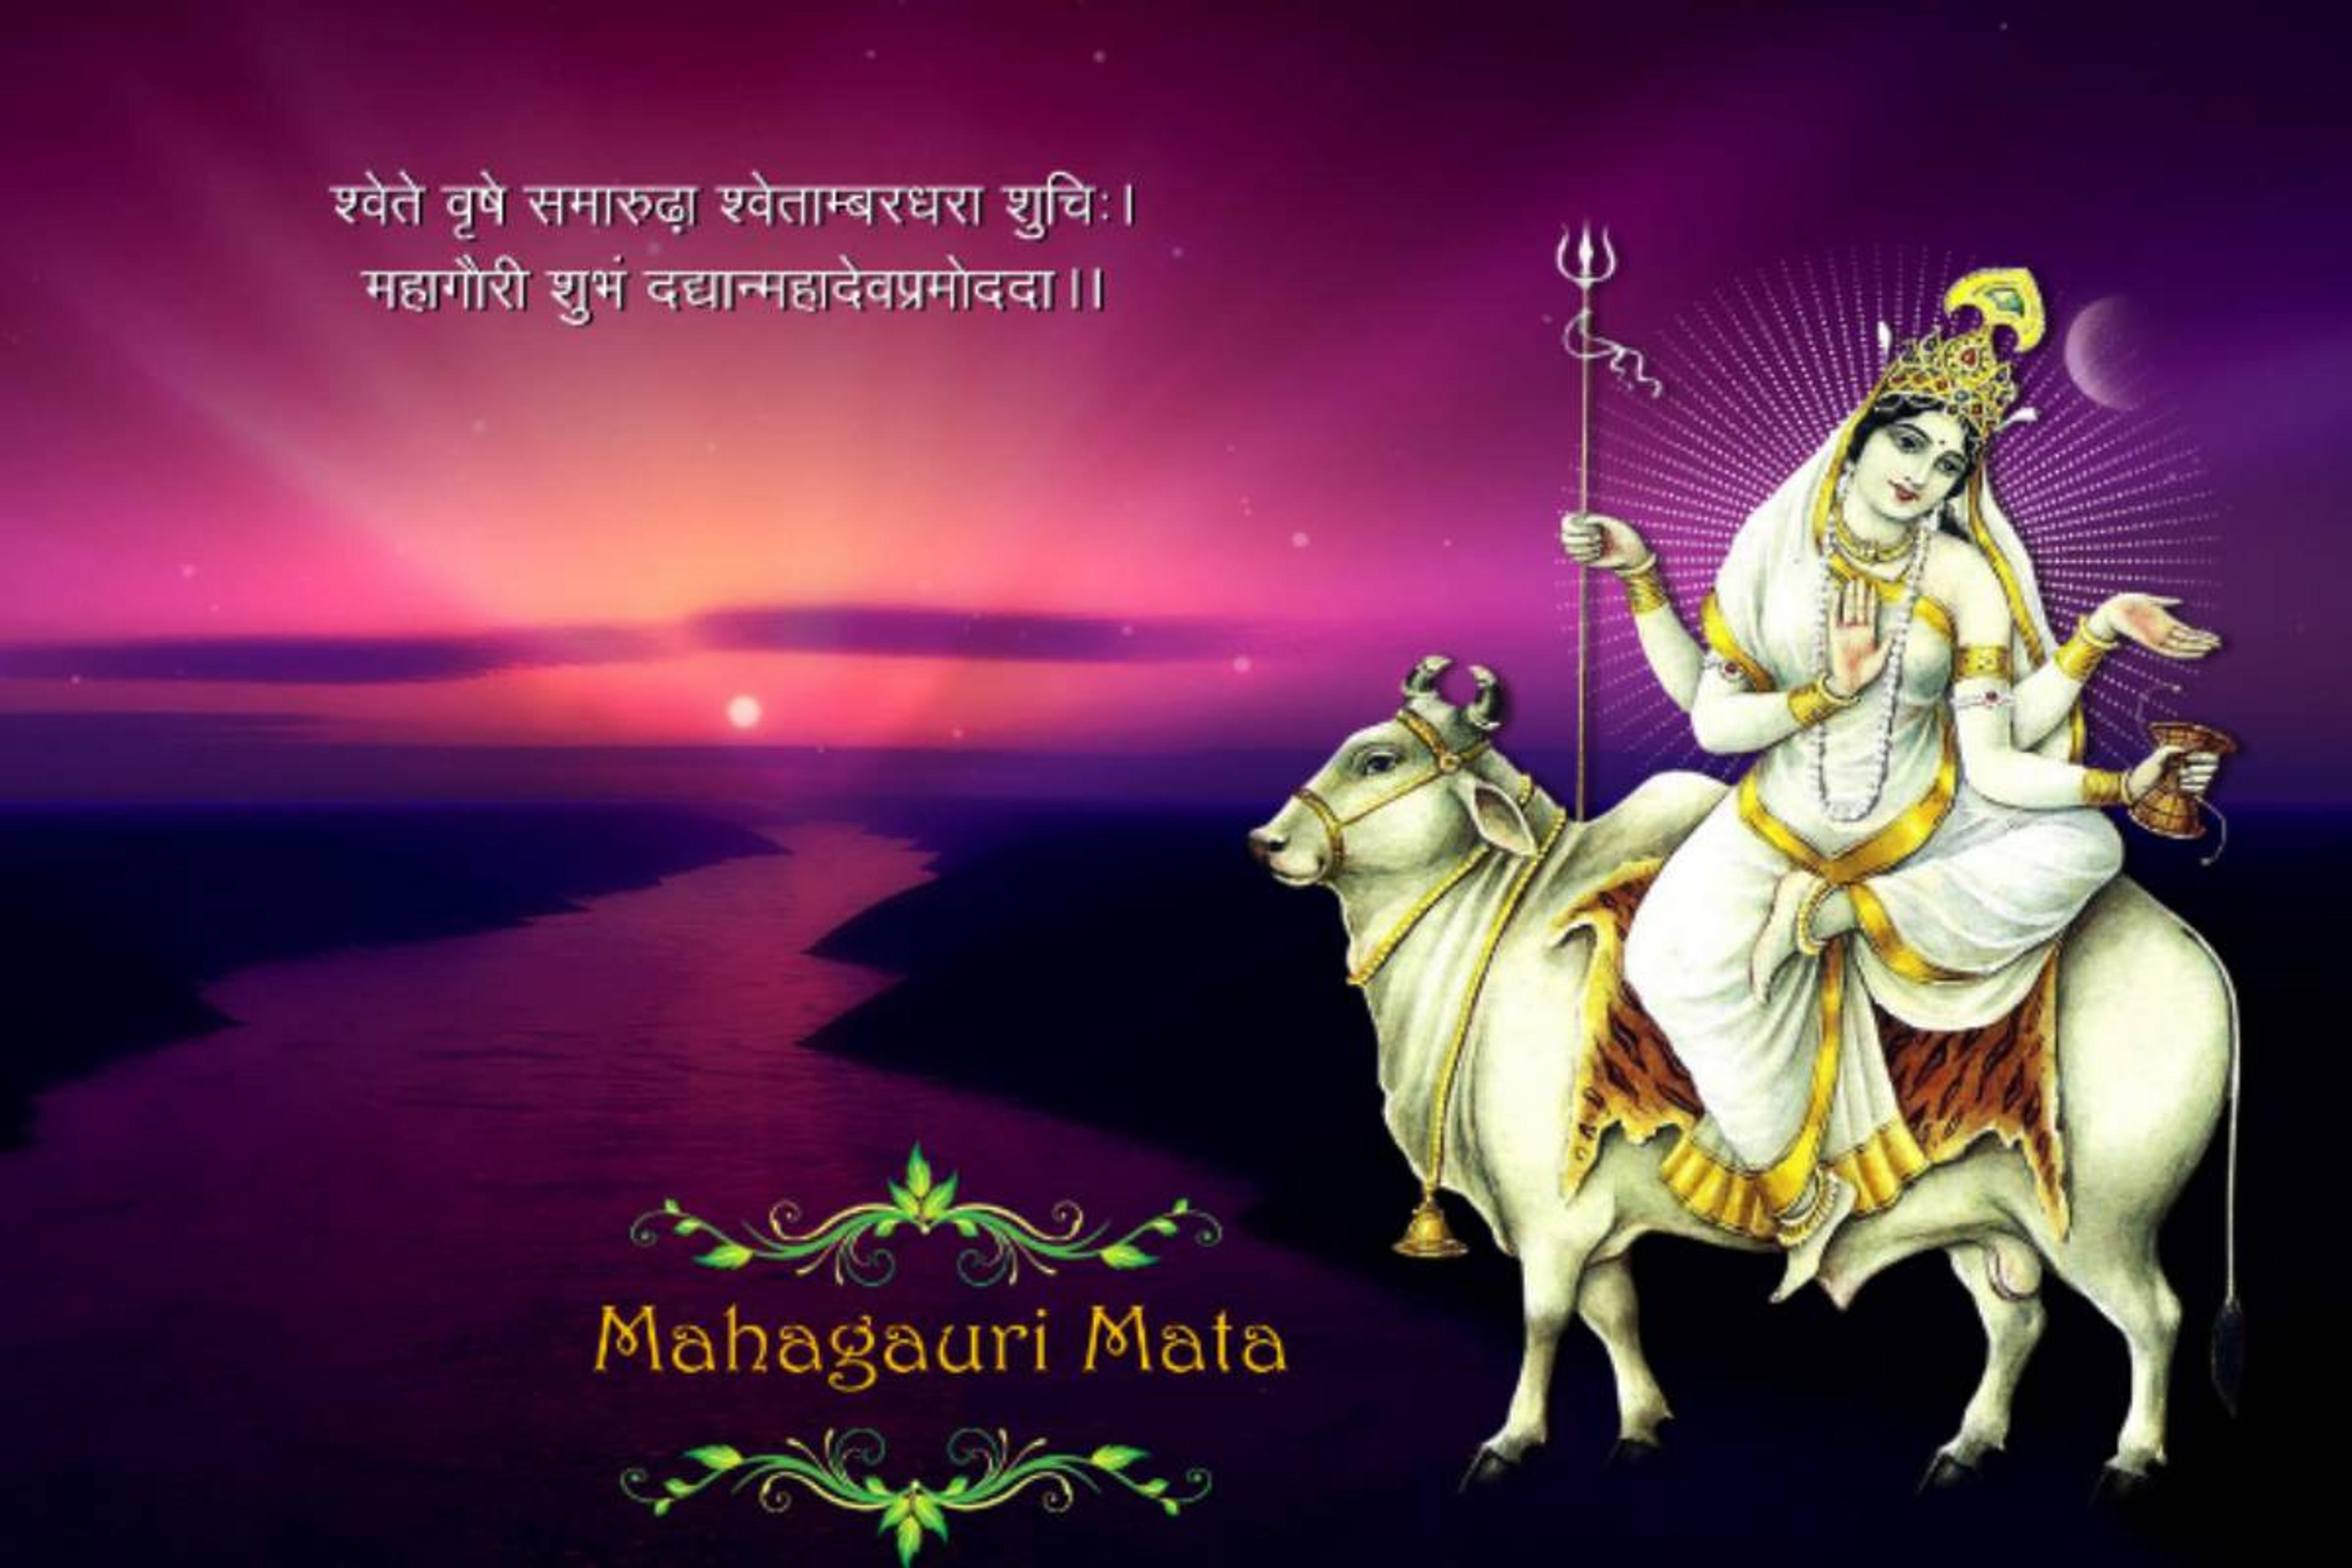 Maa Mahagauri: 8वीं शक्ति मां महागौरी के ये हैं मंत्र, इस स्त्रोत और आरती से हो
जाती हैं प्रसन्न